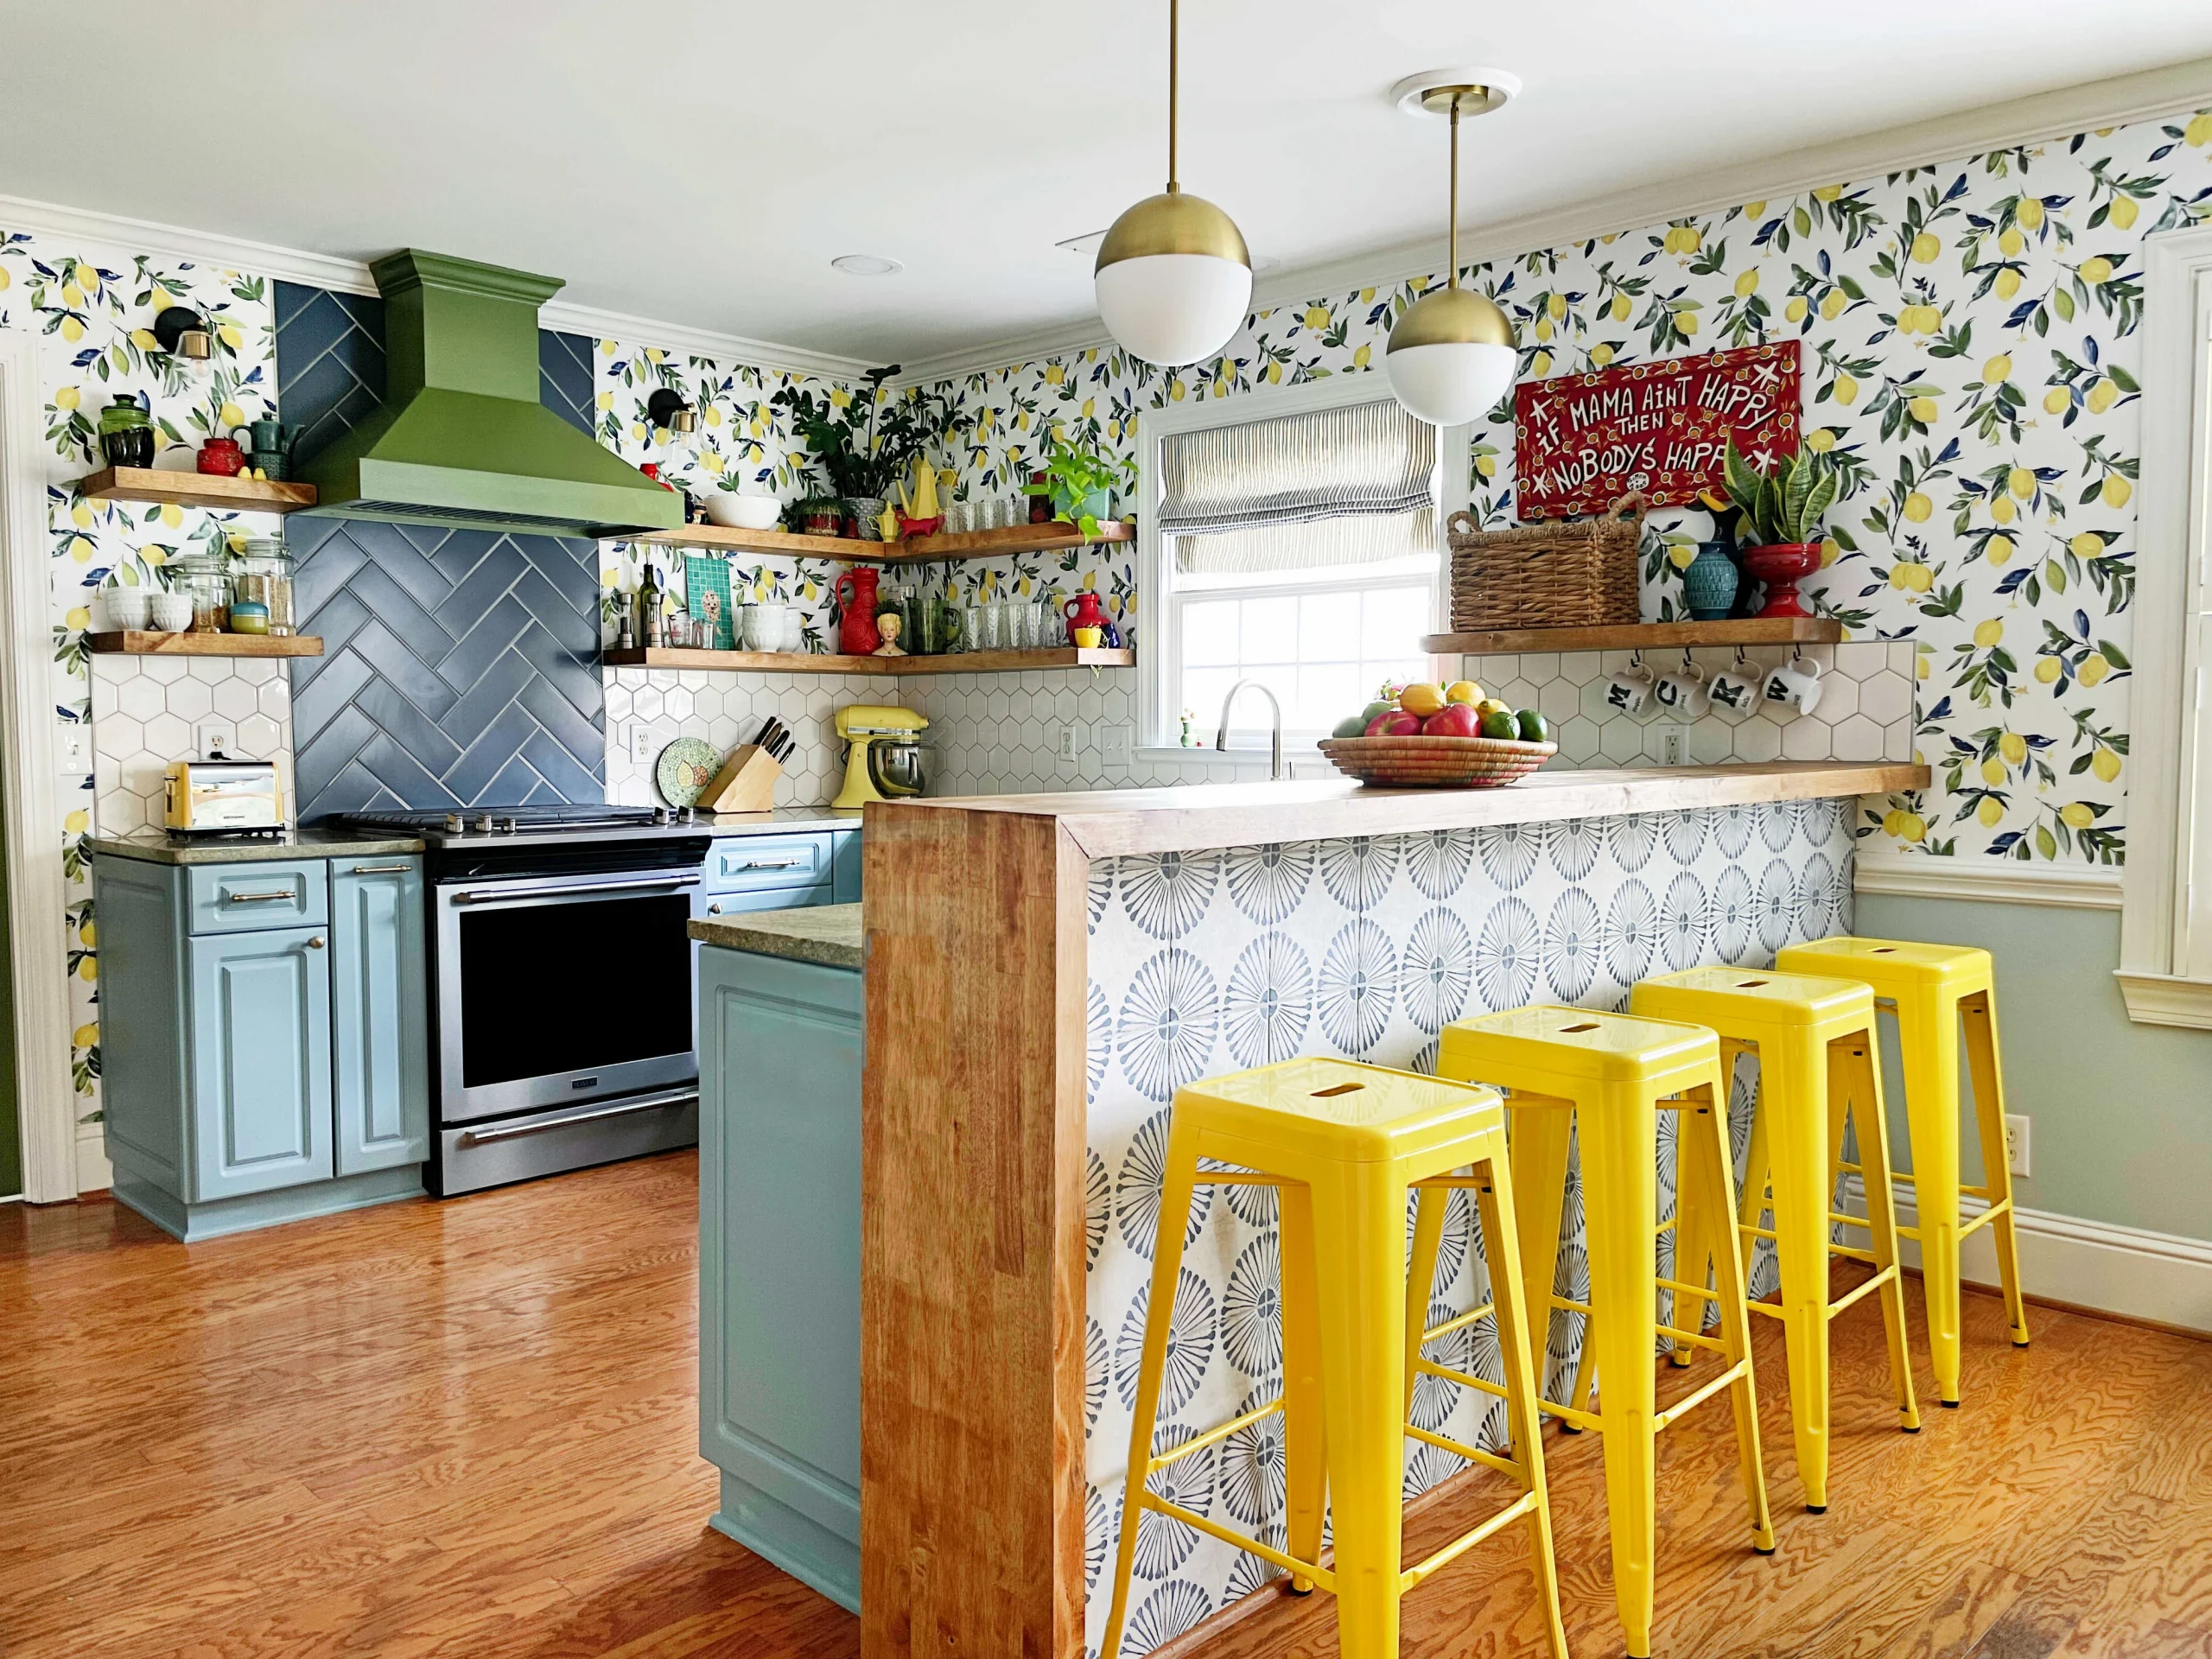 lemon wall paper for lemon themed kitchen